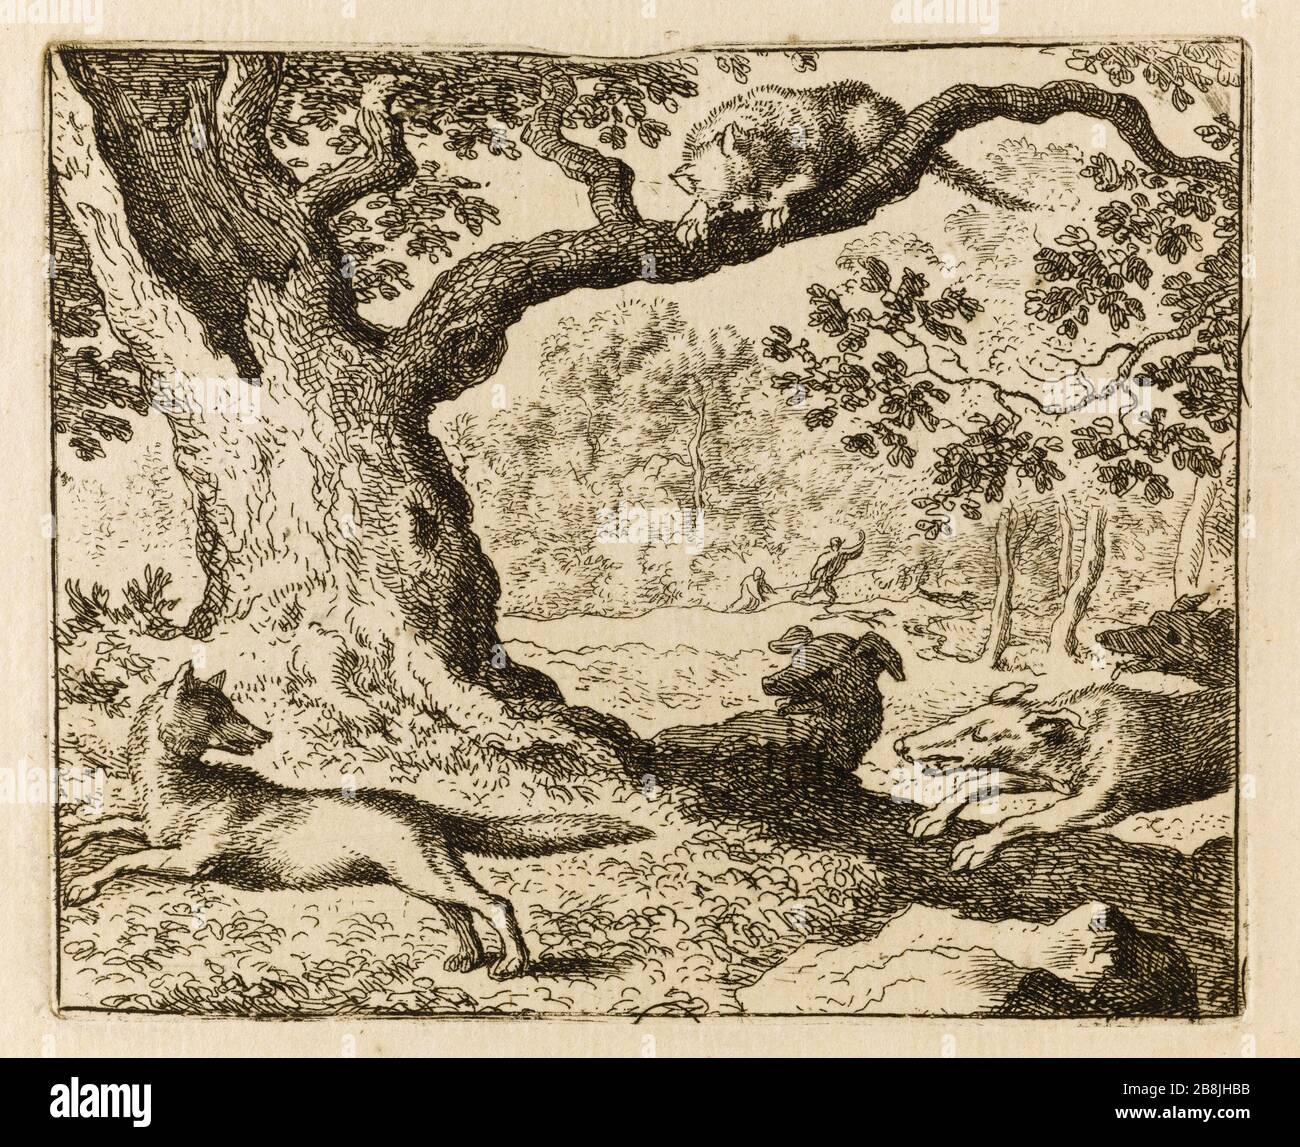 Le Roman de Renard: 51- troisième histoire représentée en sculpture au bord du miroir: le renard père surpris par plusieurs chiens de chasse dans une promenade qu'il était avec le chat, est abandonné en défiance de la promesse qu'ils ont été donnés pour s'aider mutuellement en cas de danger. (Bartsch 51) Allart van Everdingen (1621-1675). Le Roman de Renard : 51- Troisième histoire reprénnée en sculpture dans la corde du miroir : le père du renard surpris par plusieurs chiens de chasse dans une promenade qu'il fisait avec le chat, se dit abandonné au mépris de la proche qu'il s qu'ils s ont sec Banque D'Images